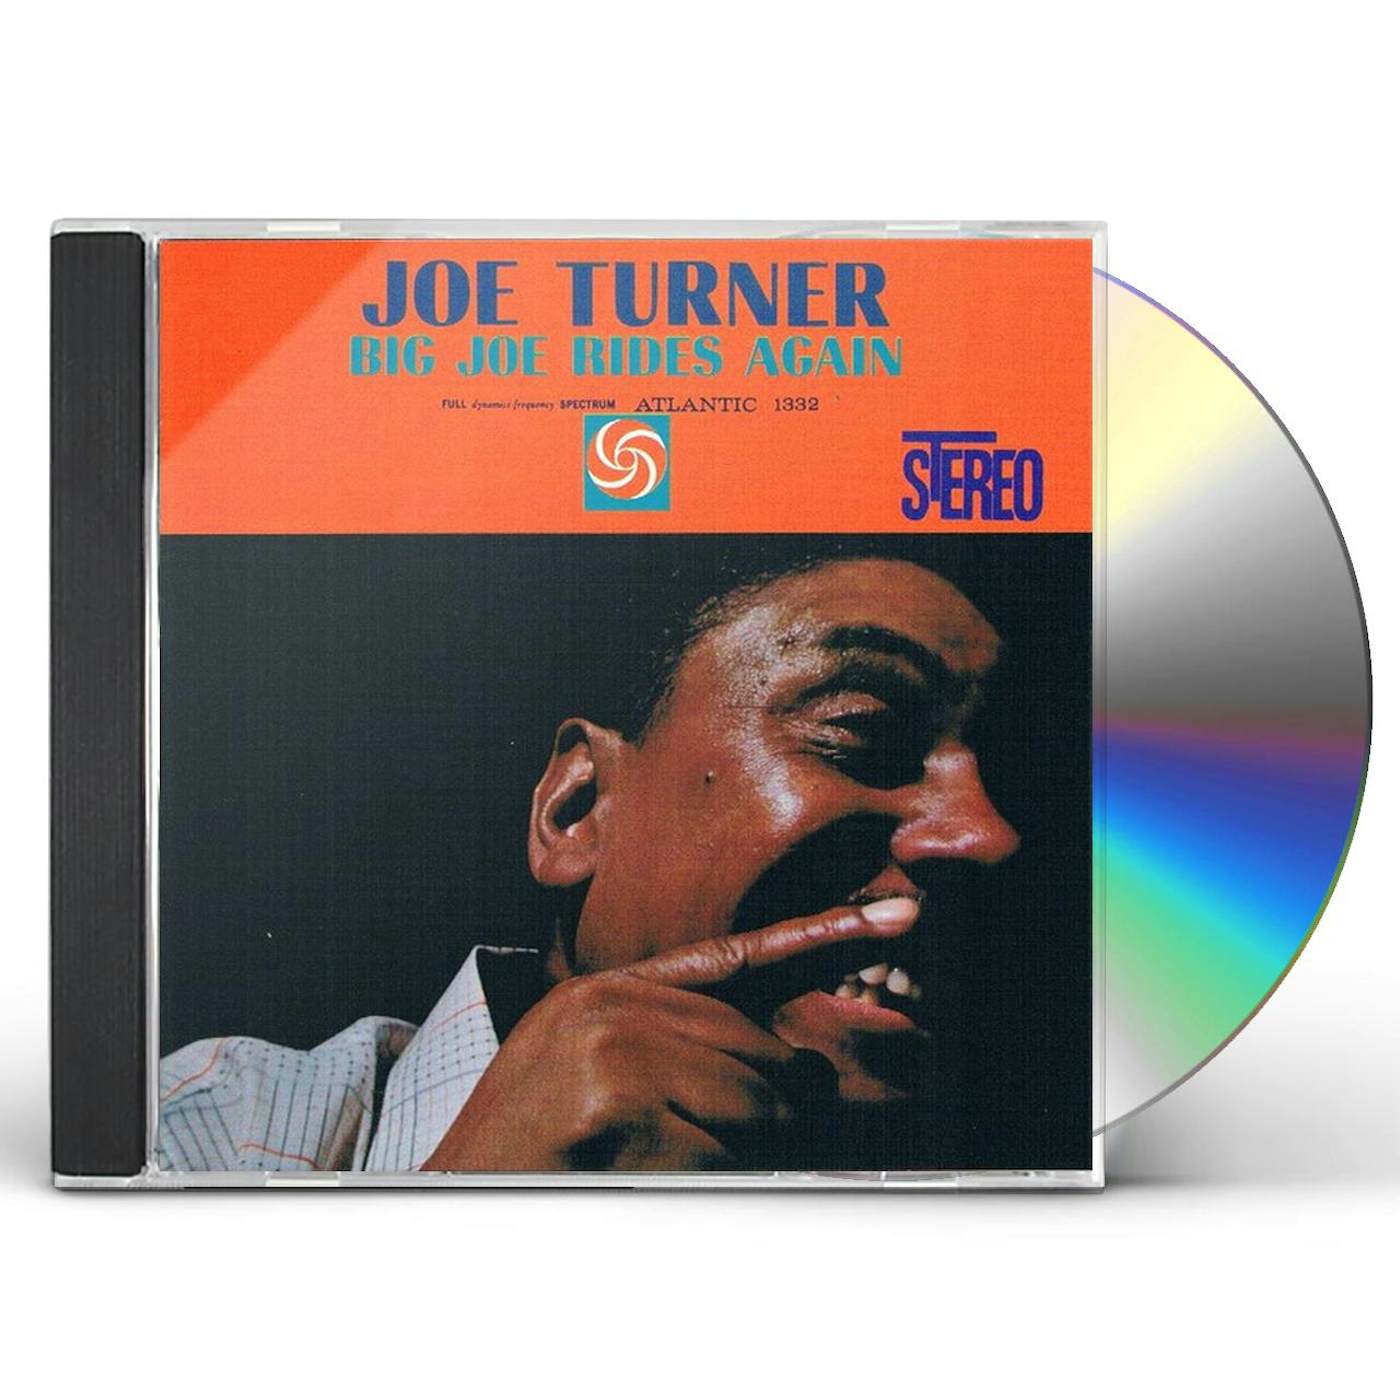 Big Joe Turner BIG JOE RIDES AGAIN CD